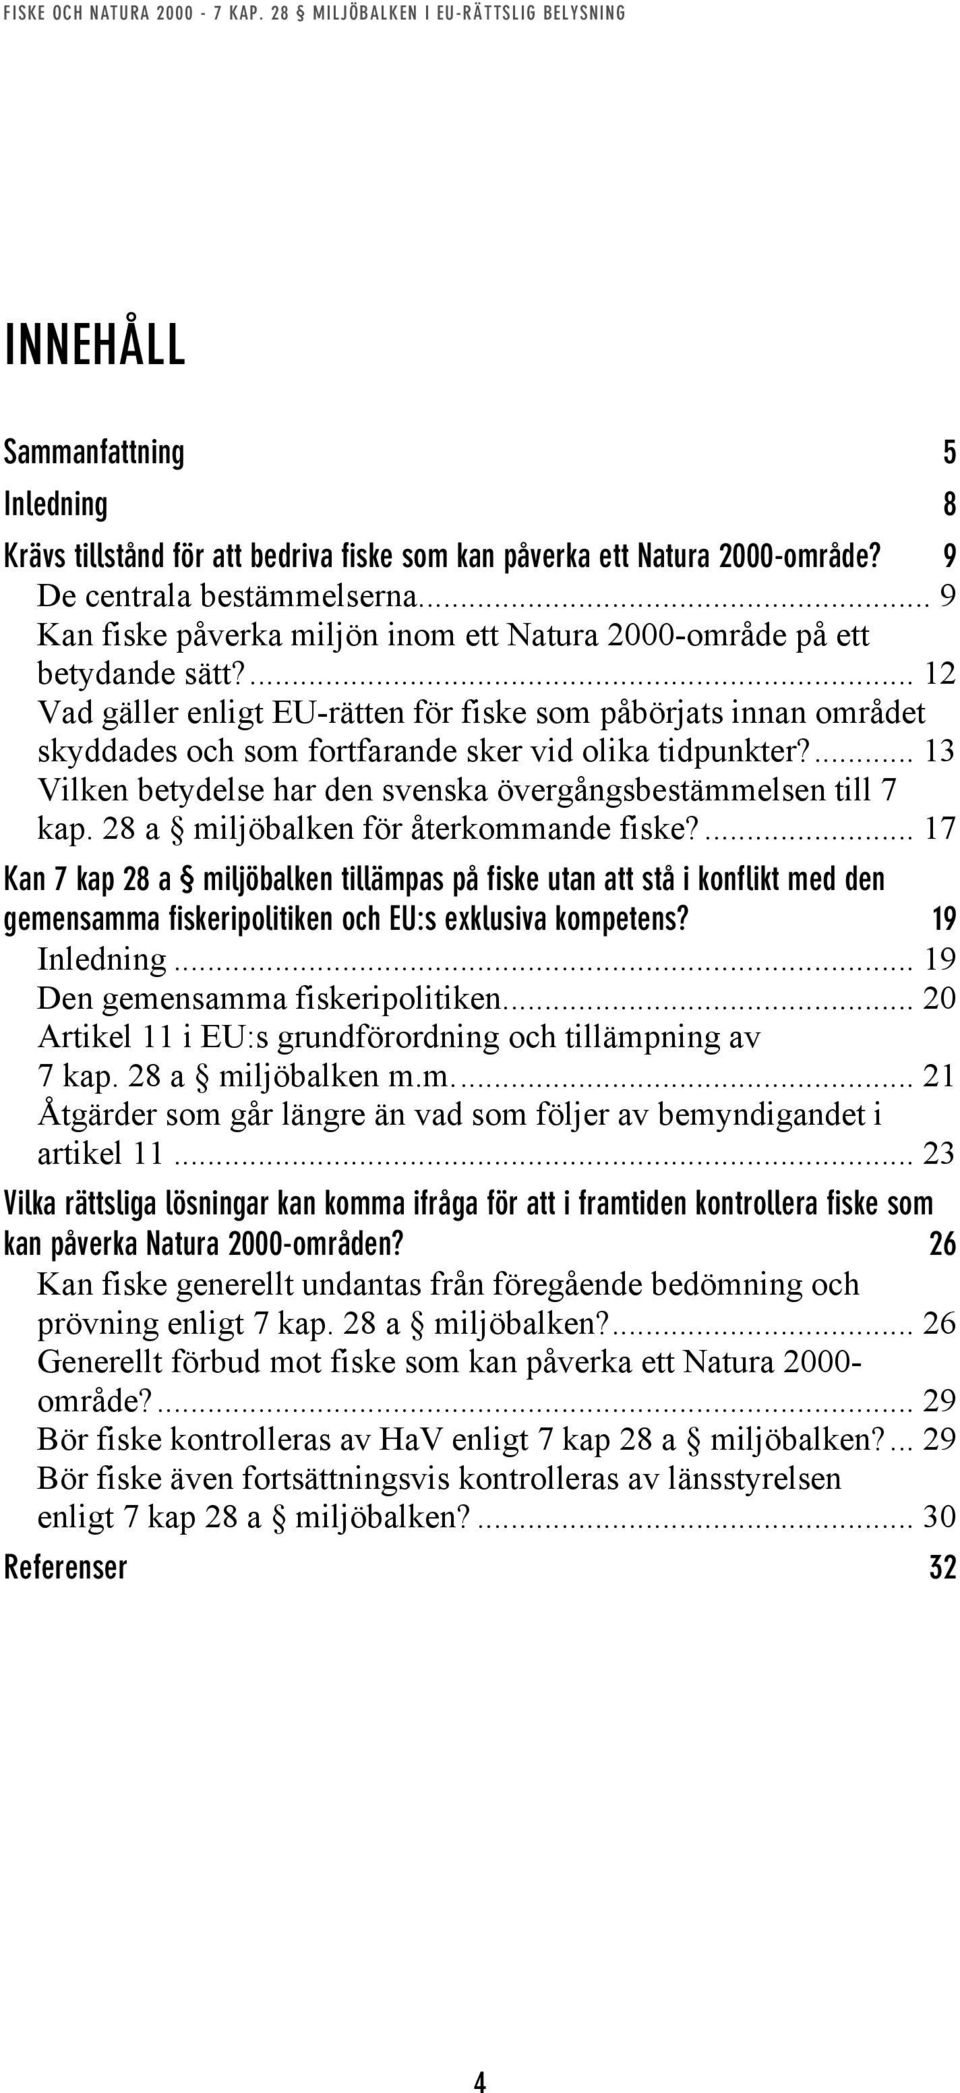 ... 12 Vad gäller enligt EU-rätten för fiske som påbörjats innan området skyddades och som fortfarande sker vid olika tidpunkter?... 13 Vilken betydelse har den svenska övergångsbestämmelsen till 7 kap.